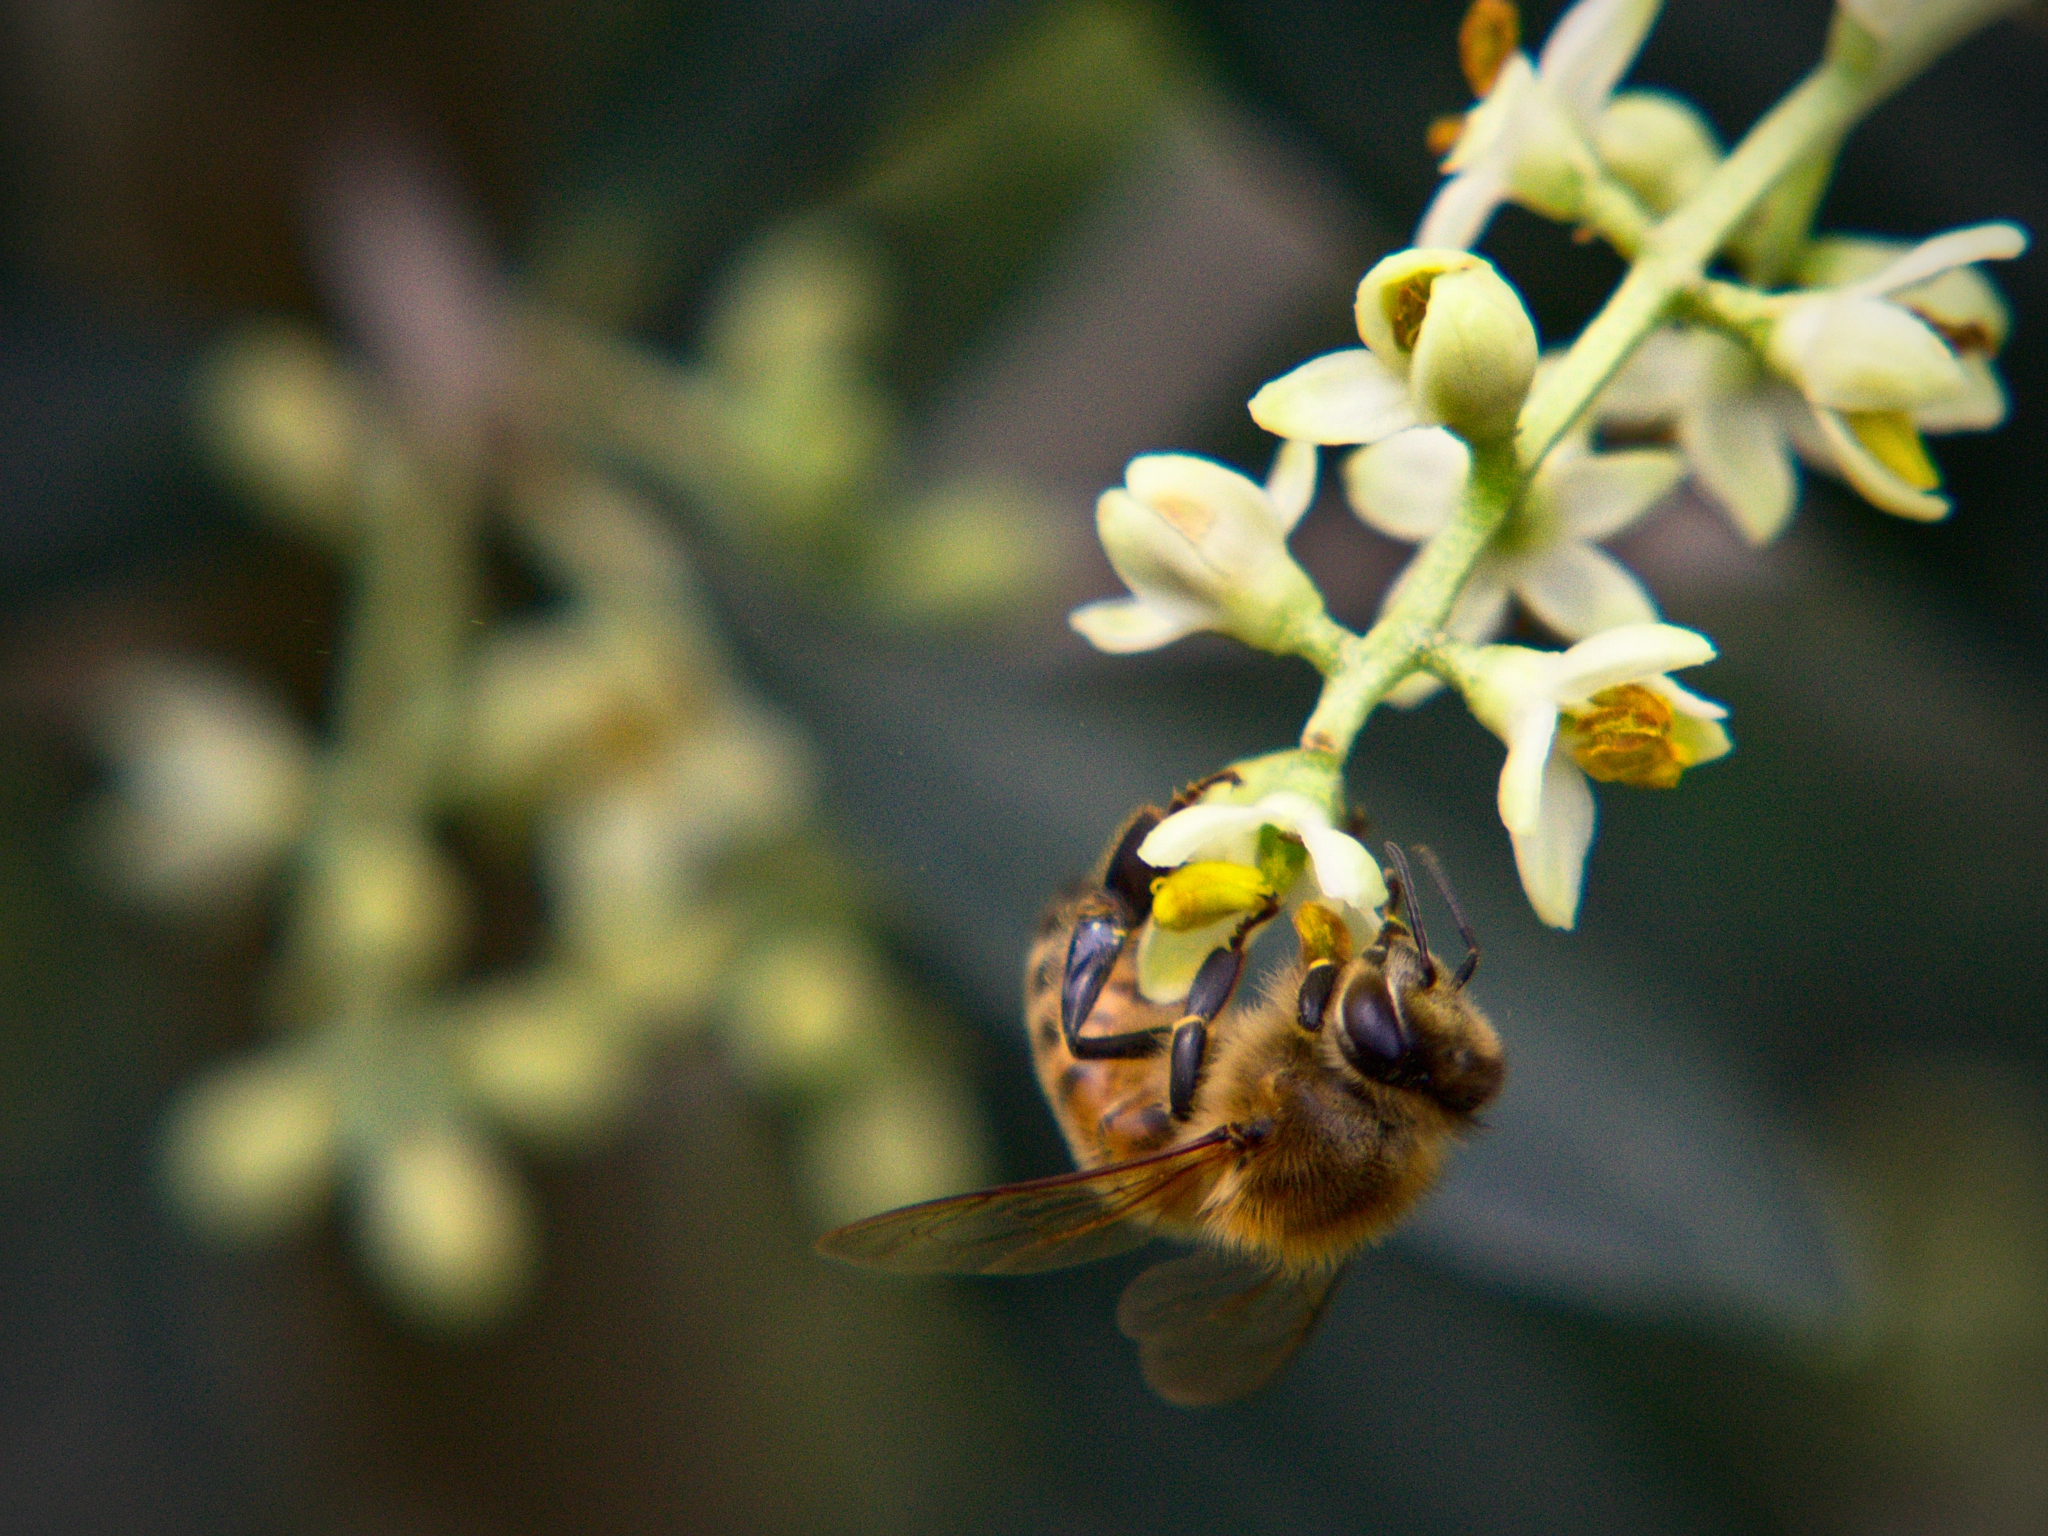 AF Zoom-Nikkor 80-200mm f/4.5-5.6D sample photo. Bee on olive flower. photography